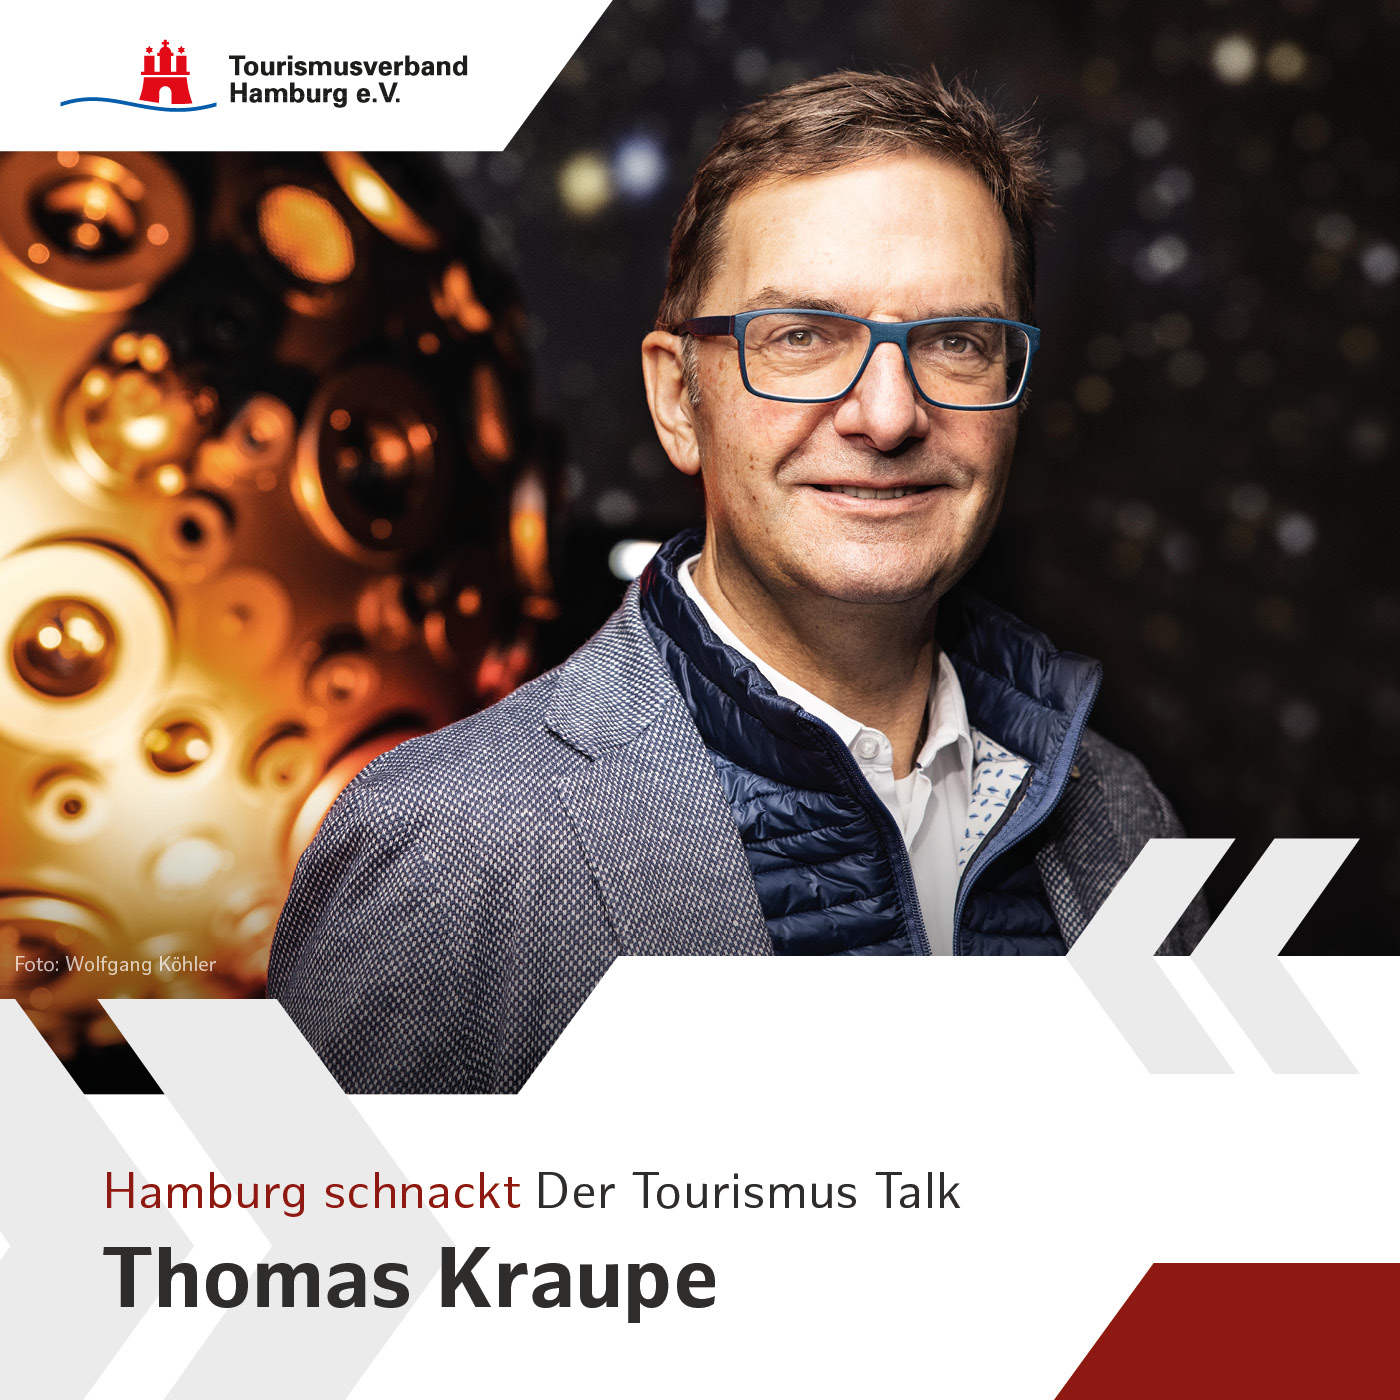 Hamburg schnackt mit Thomas Kraupe